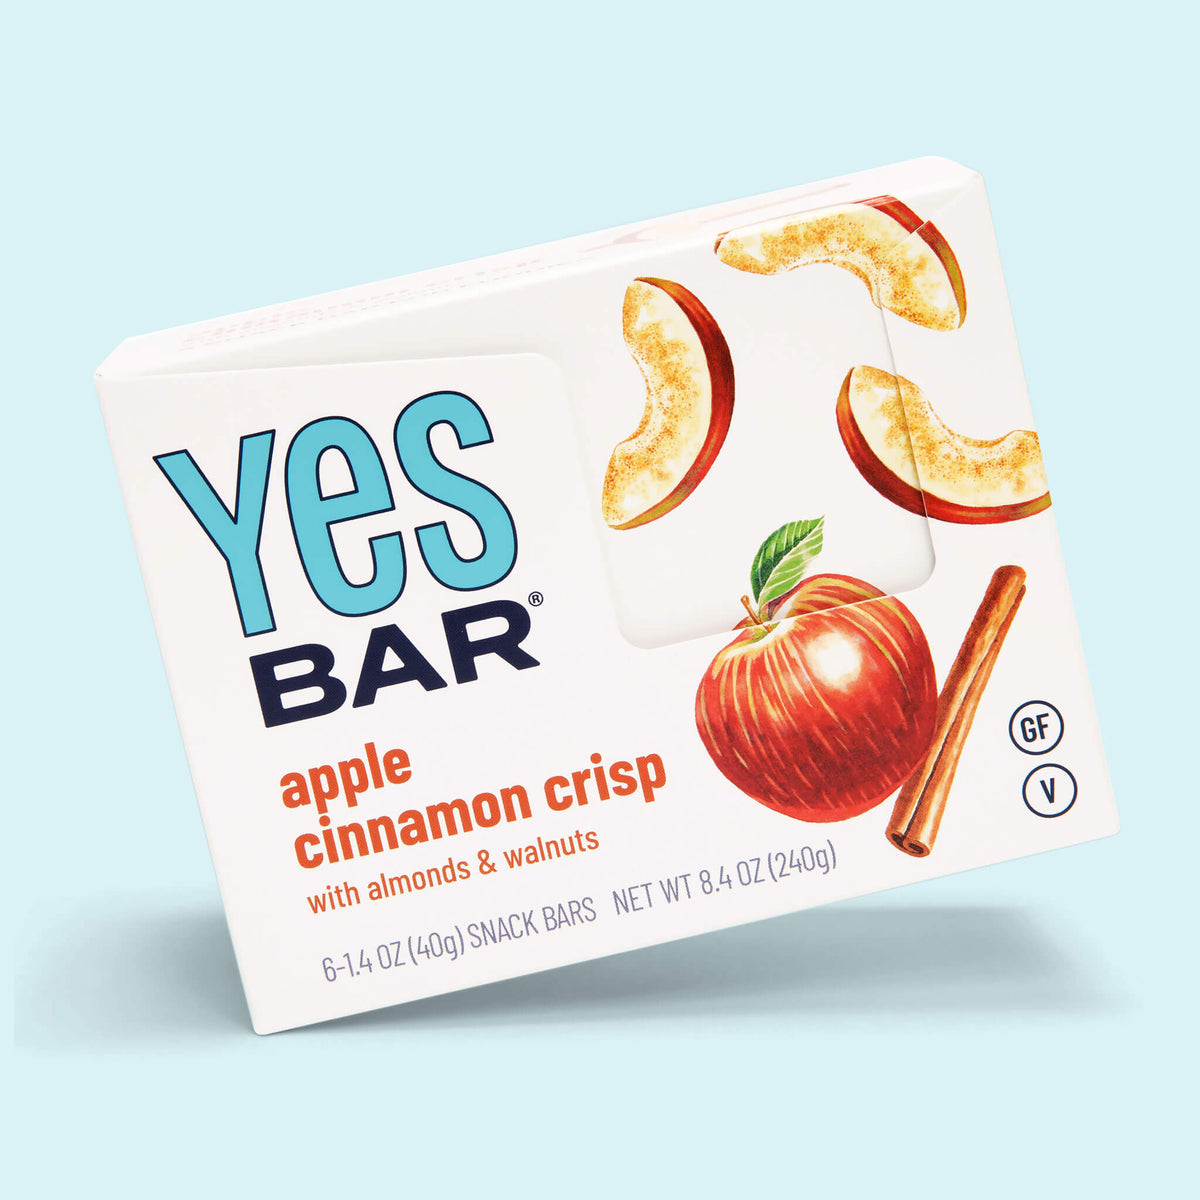 Apple Cinnamon Crisp Six Pack